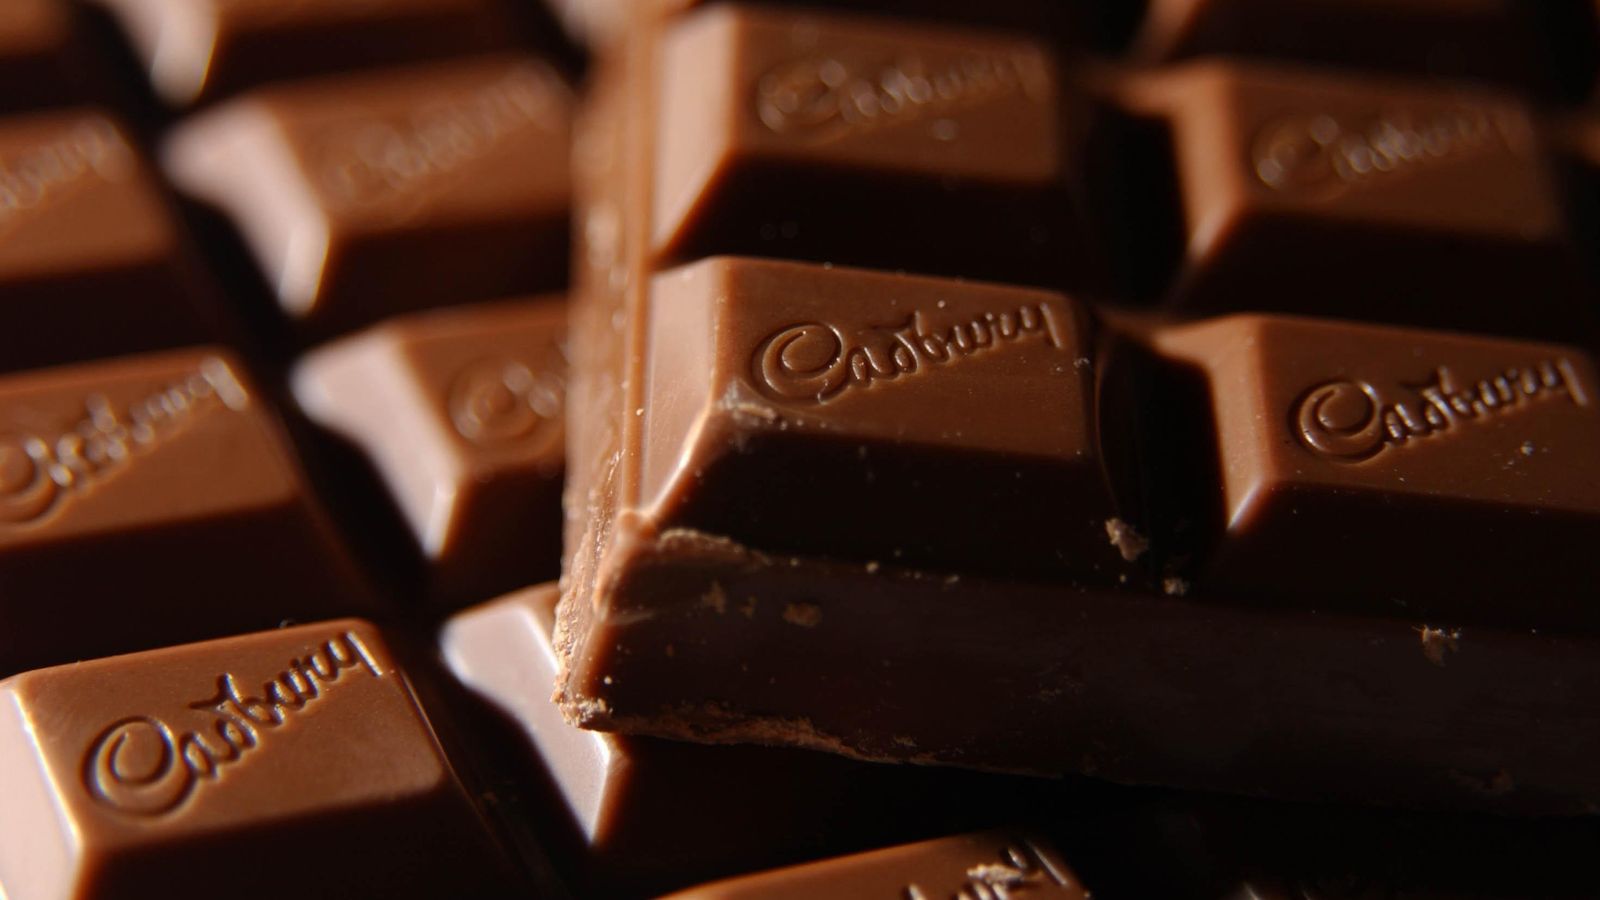 Cadbury travaille sur des barres de chocolat à faible teneur en sucre – L’OMS recommande d’éviter les édulcorants pour contrôler le poids |  nouvelles du monde